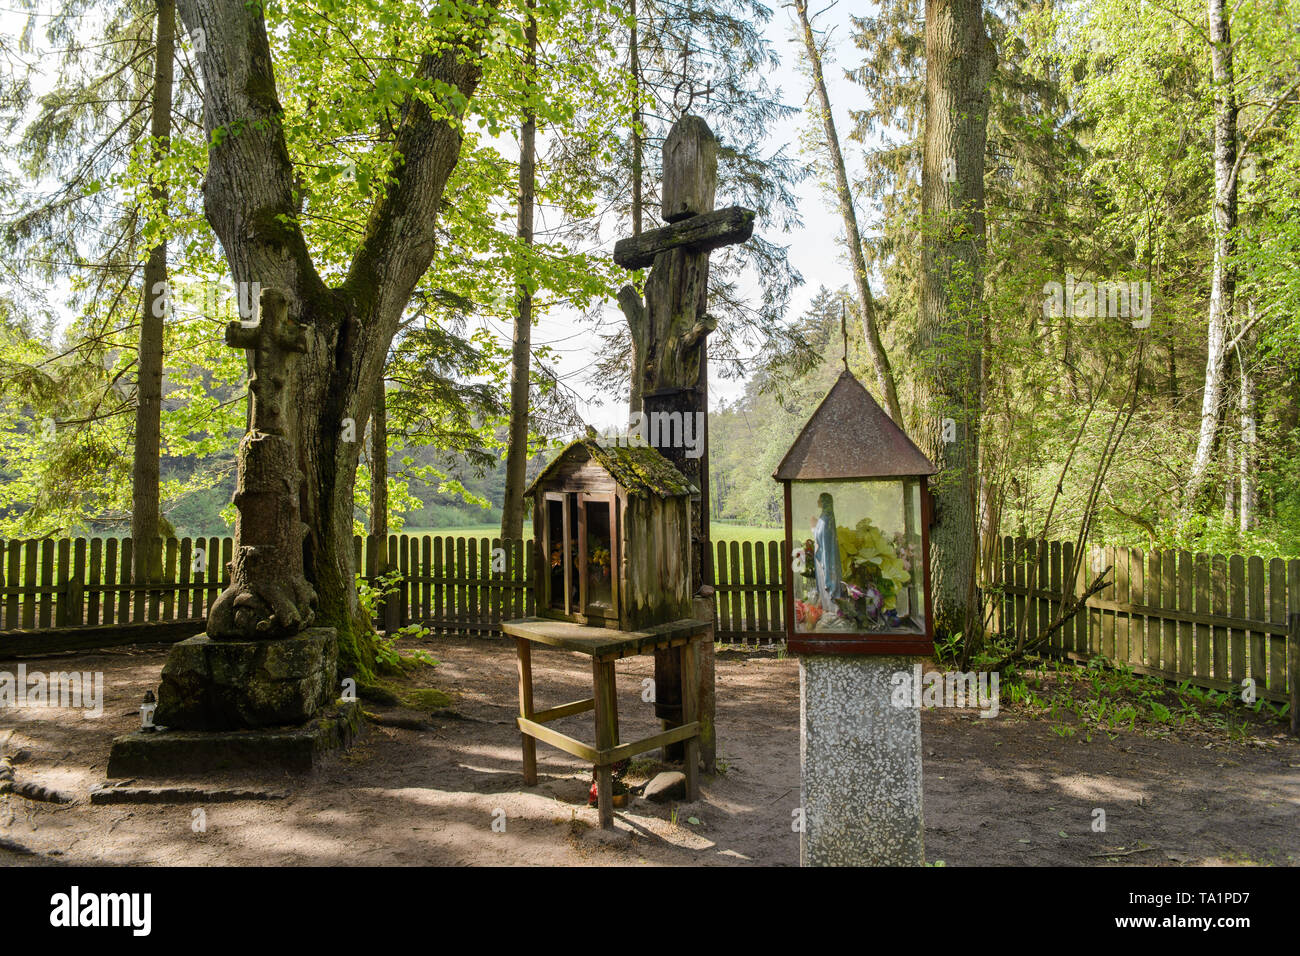 Kreuz und Holz- Kapellen im Wald in einem Ort namens "Heiligen Ort". Ort der Taufe des heidnischen Yotvingians. Das Rospuda-tal, Polen Stockfoto